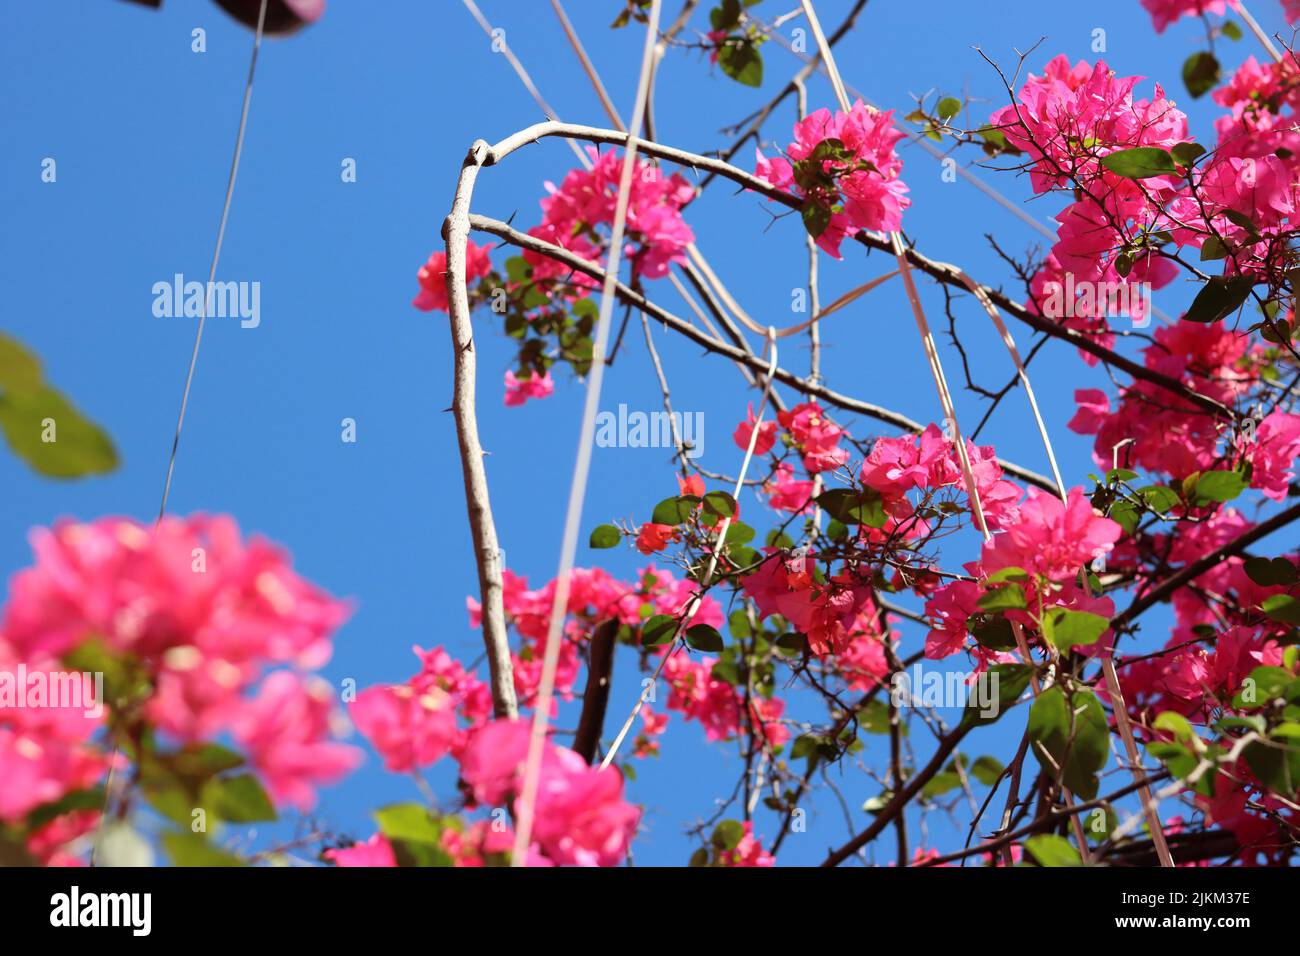 Un gros plan de belles fleurs de bougainvillea glabra rose dans un jardin Banque D'Images